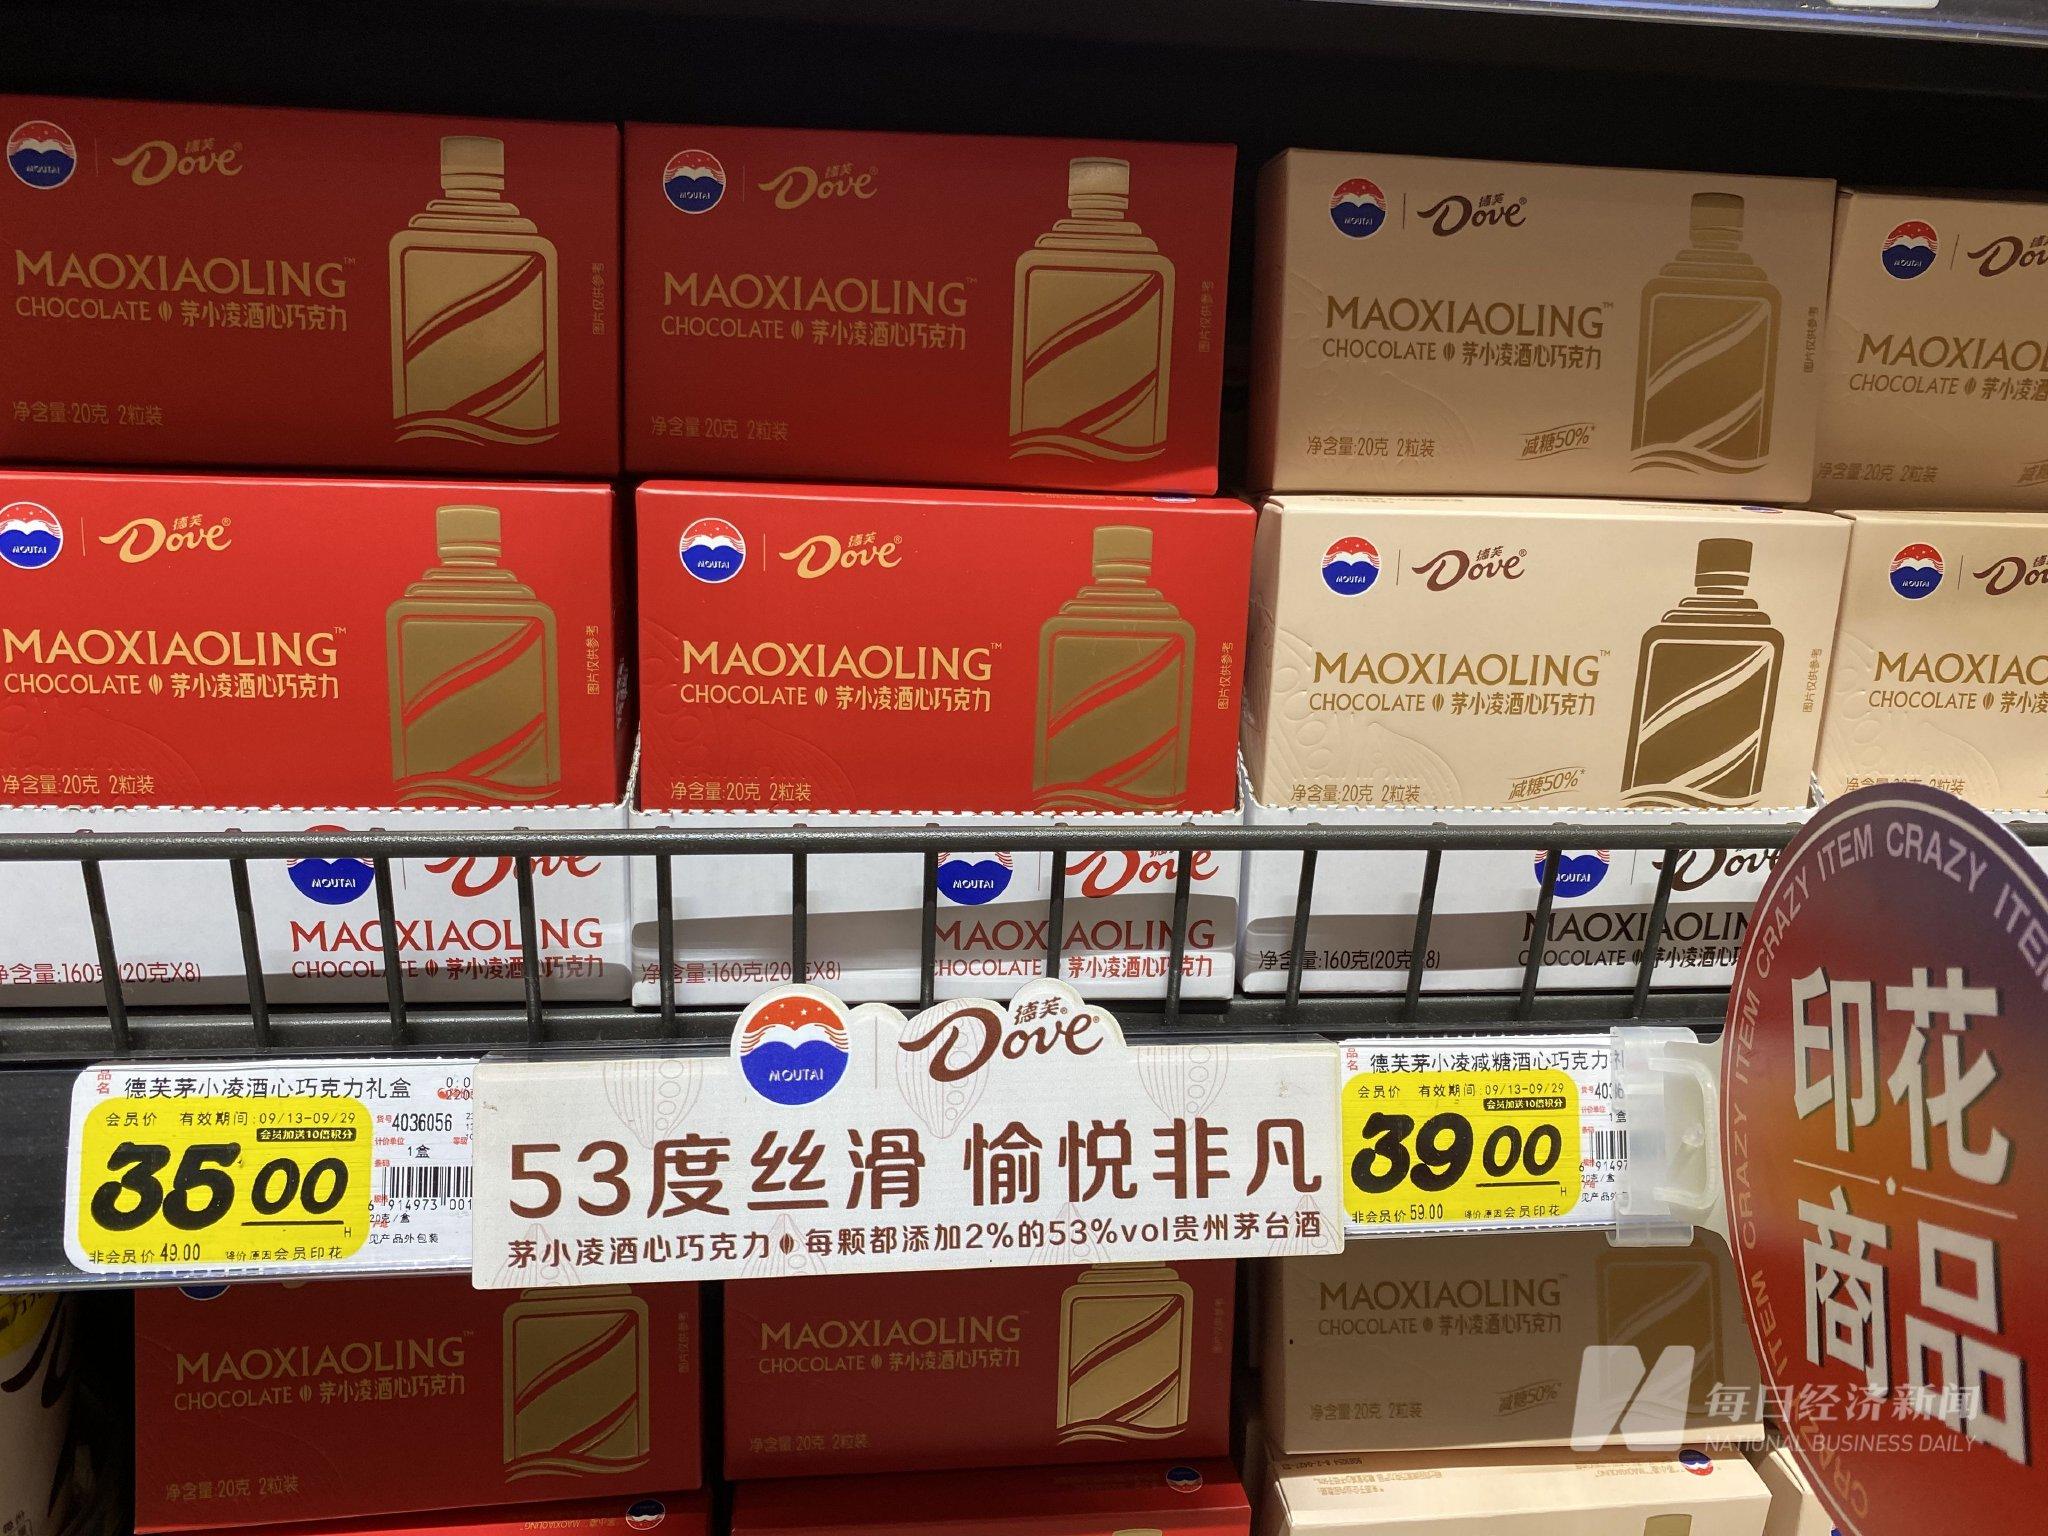 茅台德芙联名产品“茅小凌”酒心巧克力正式开售，特别提示“驾车时请勿食用”